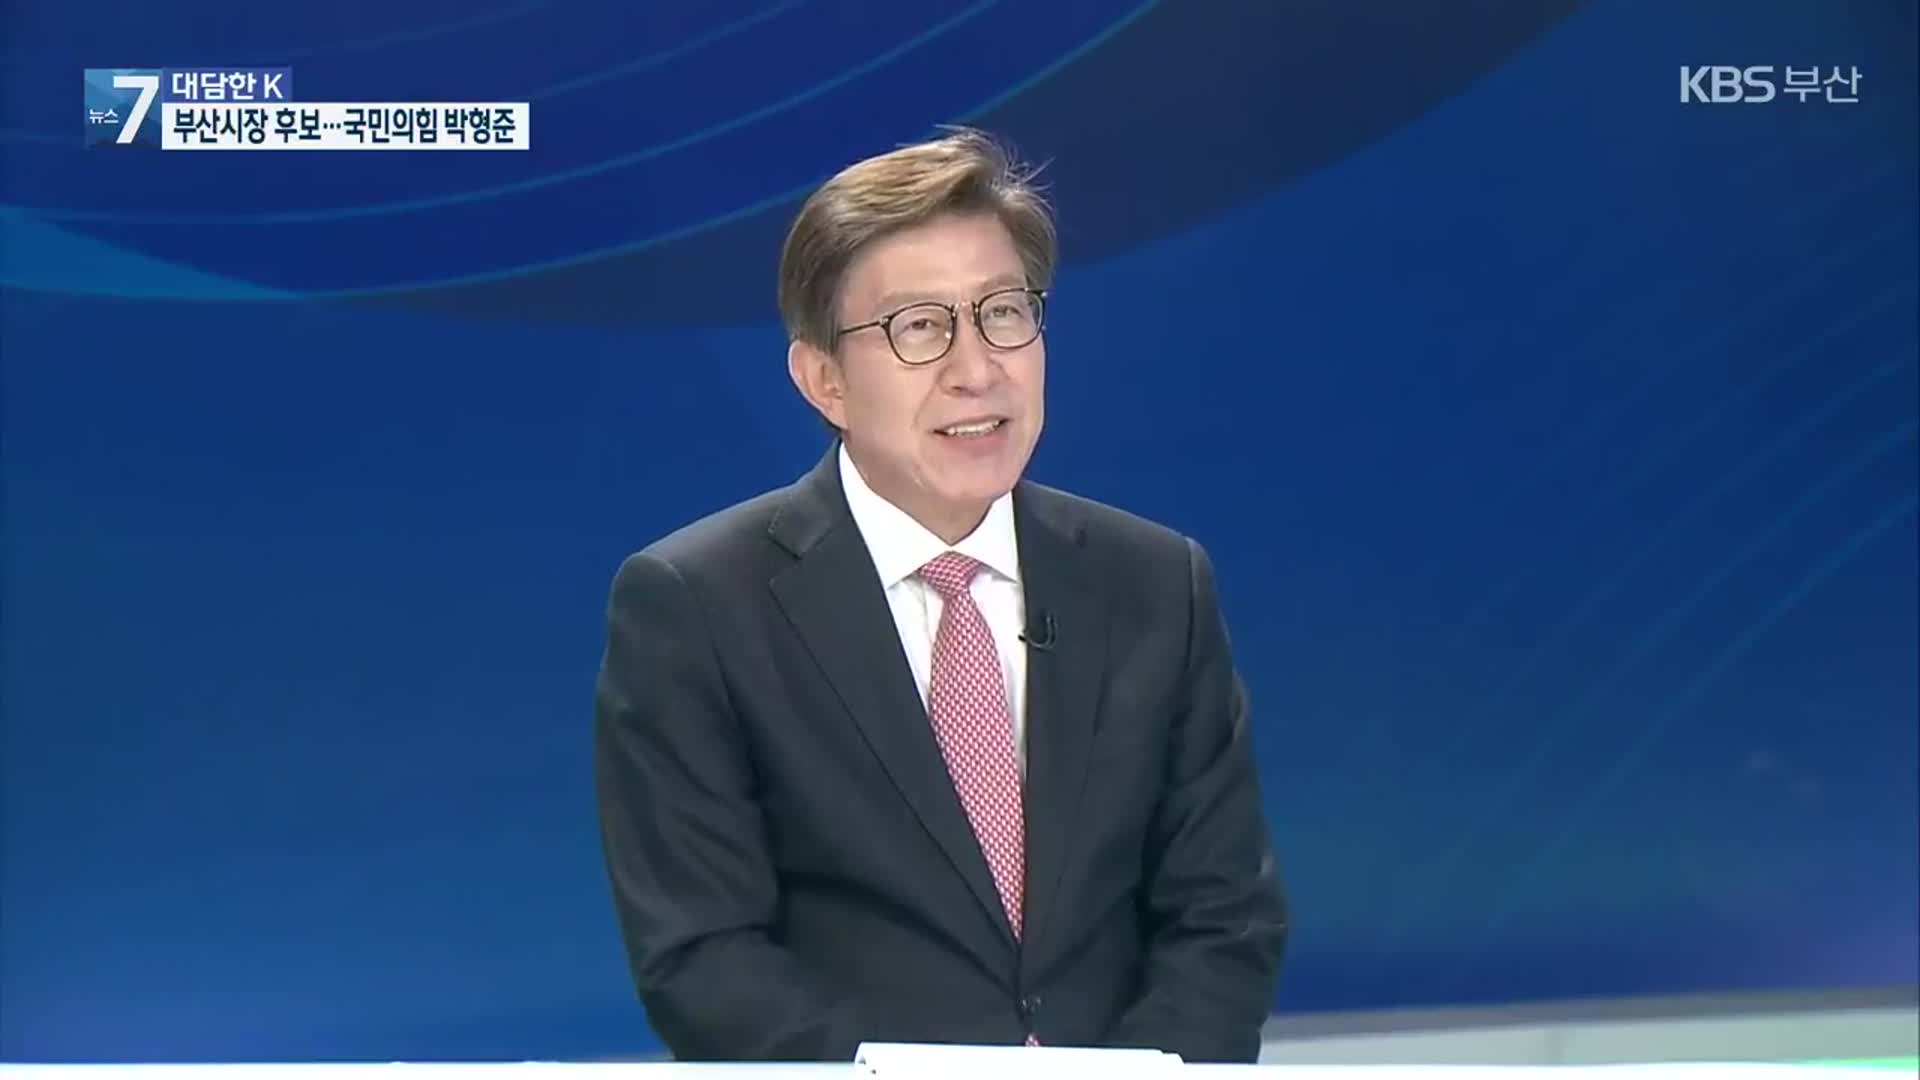 [대담한K] 부산시장 후보에게 듣는다…국민의힘 박형준 후보